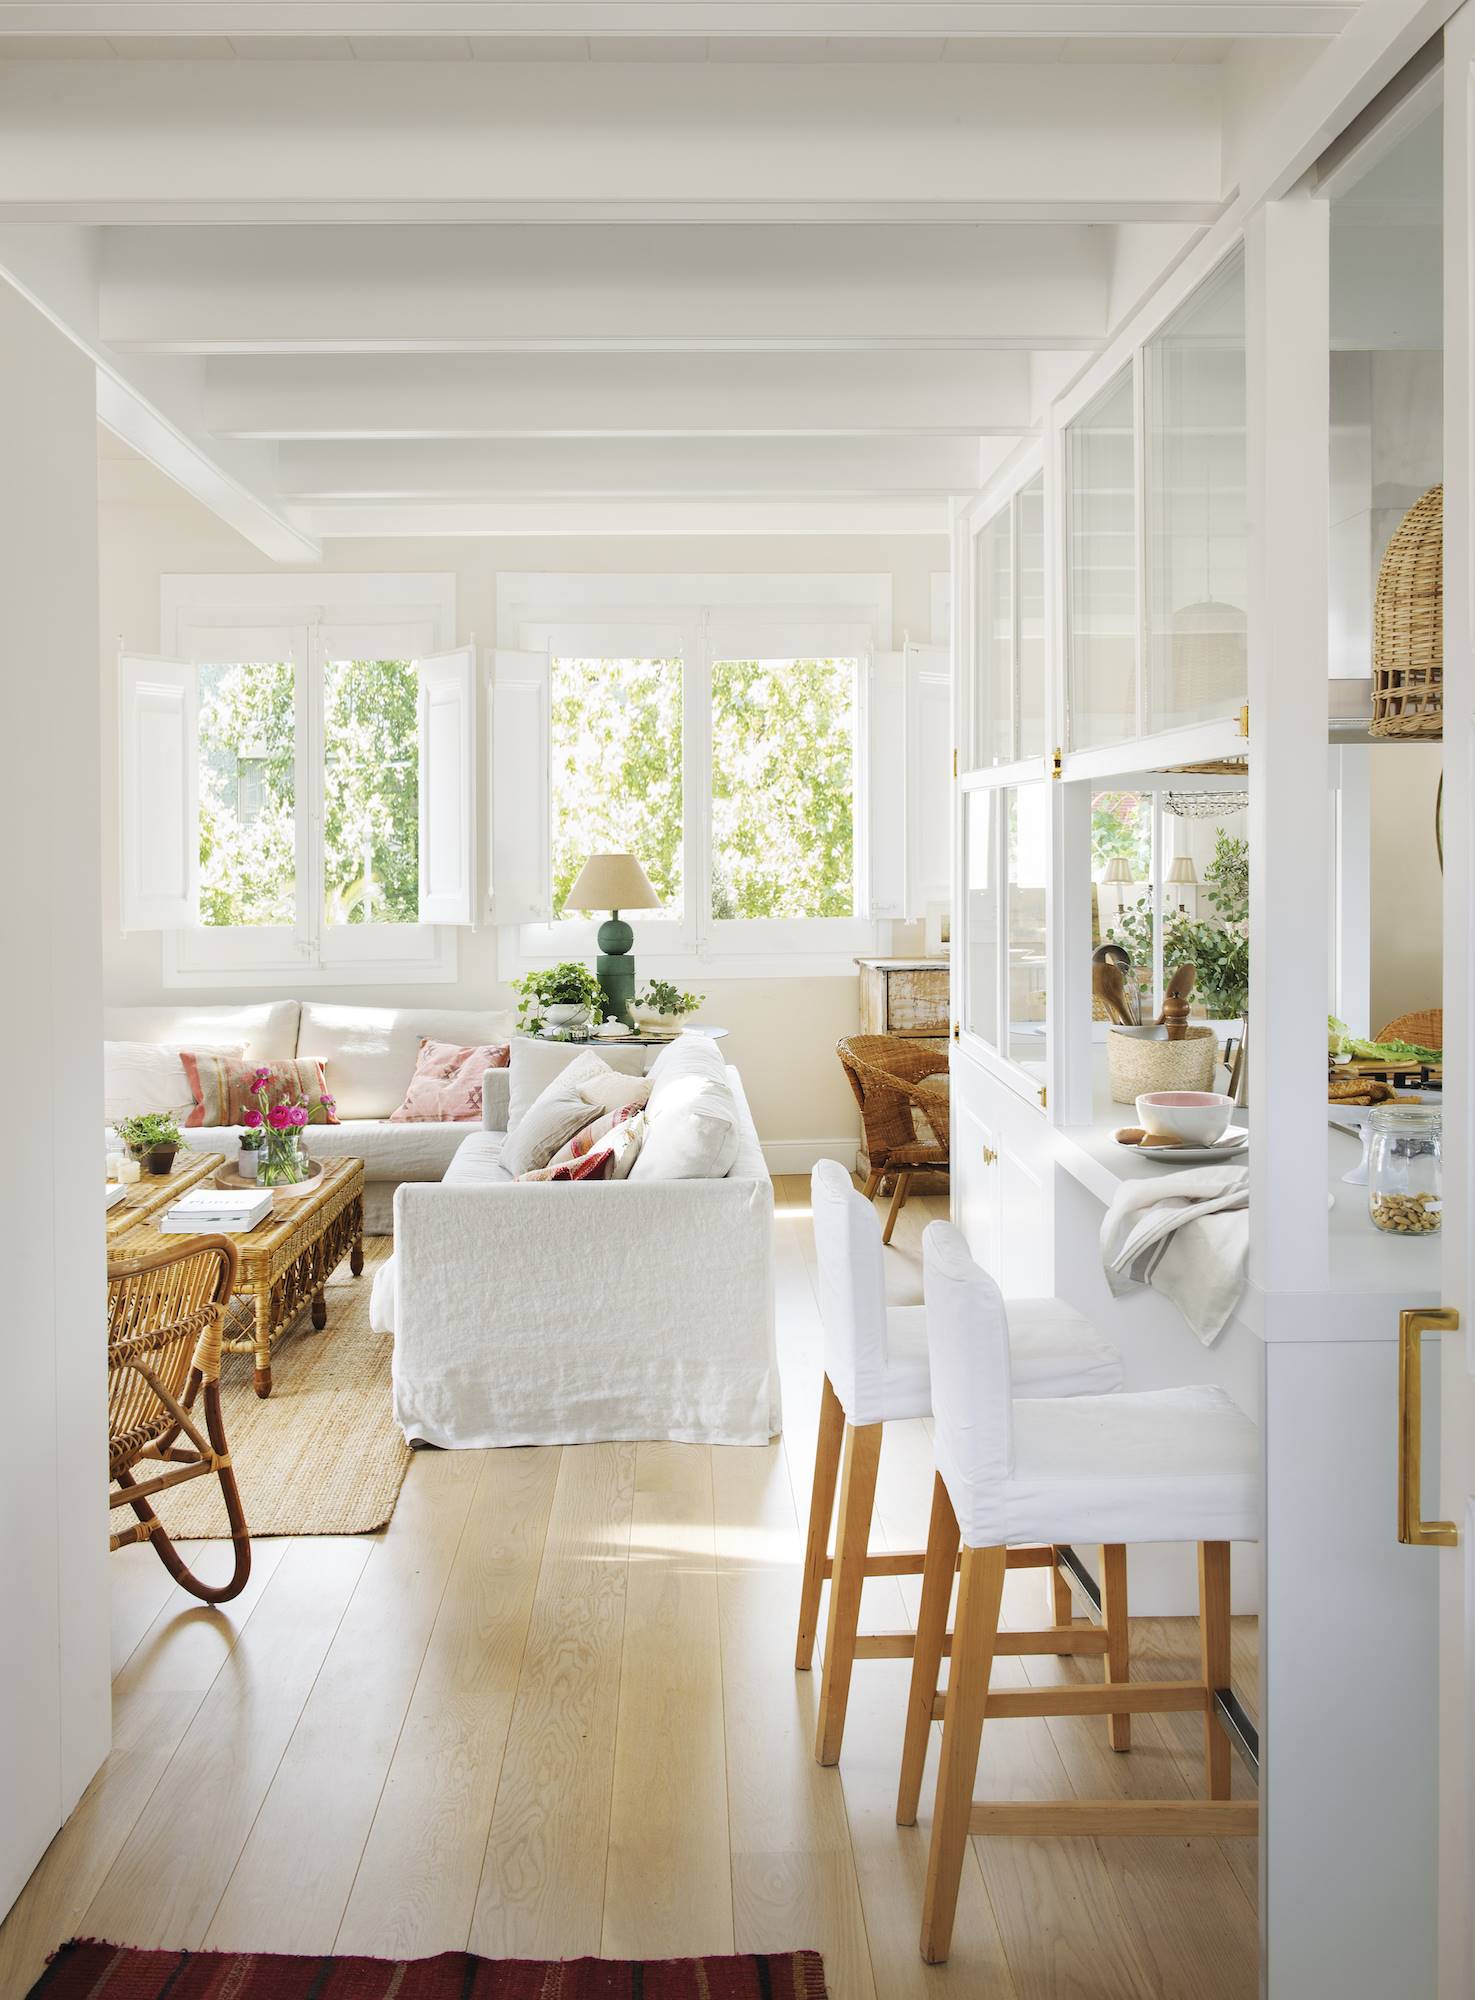 Un salón con barra hacia la cocina, taburetes y sofá en color blanco. 